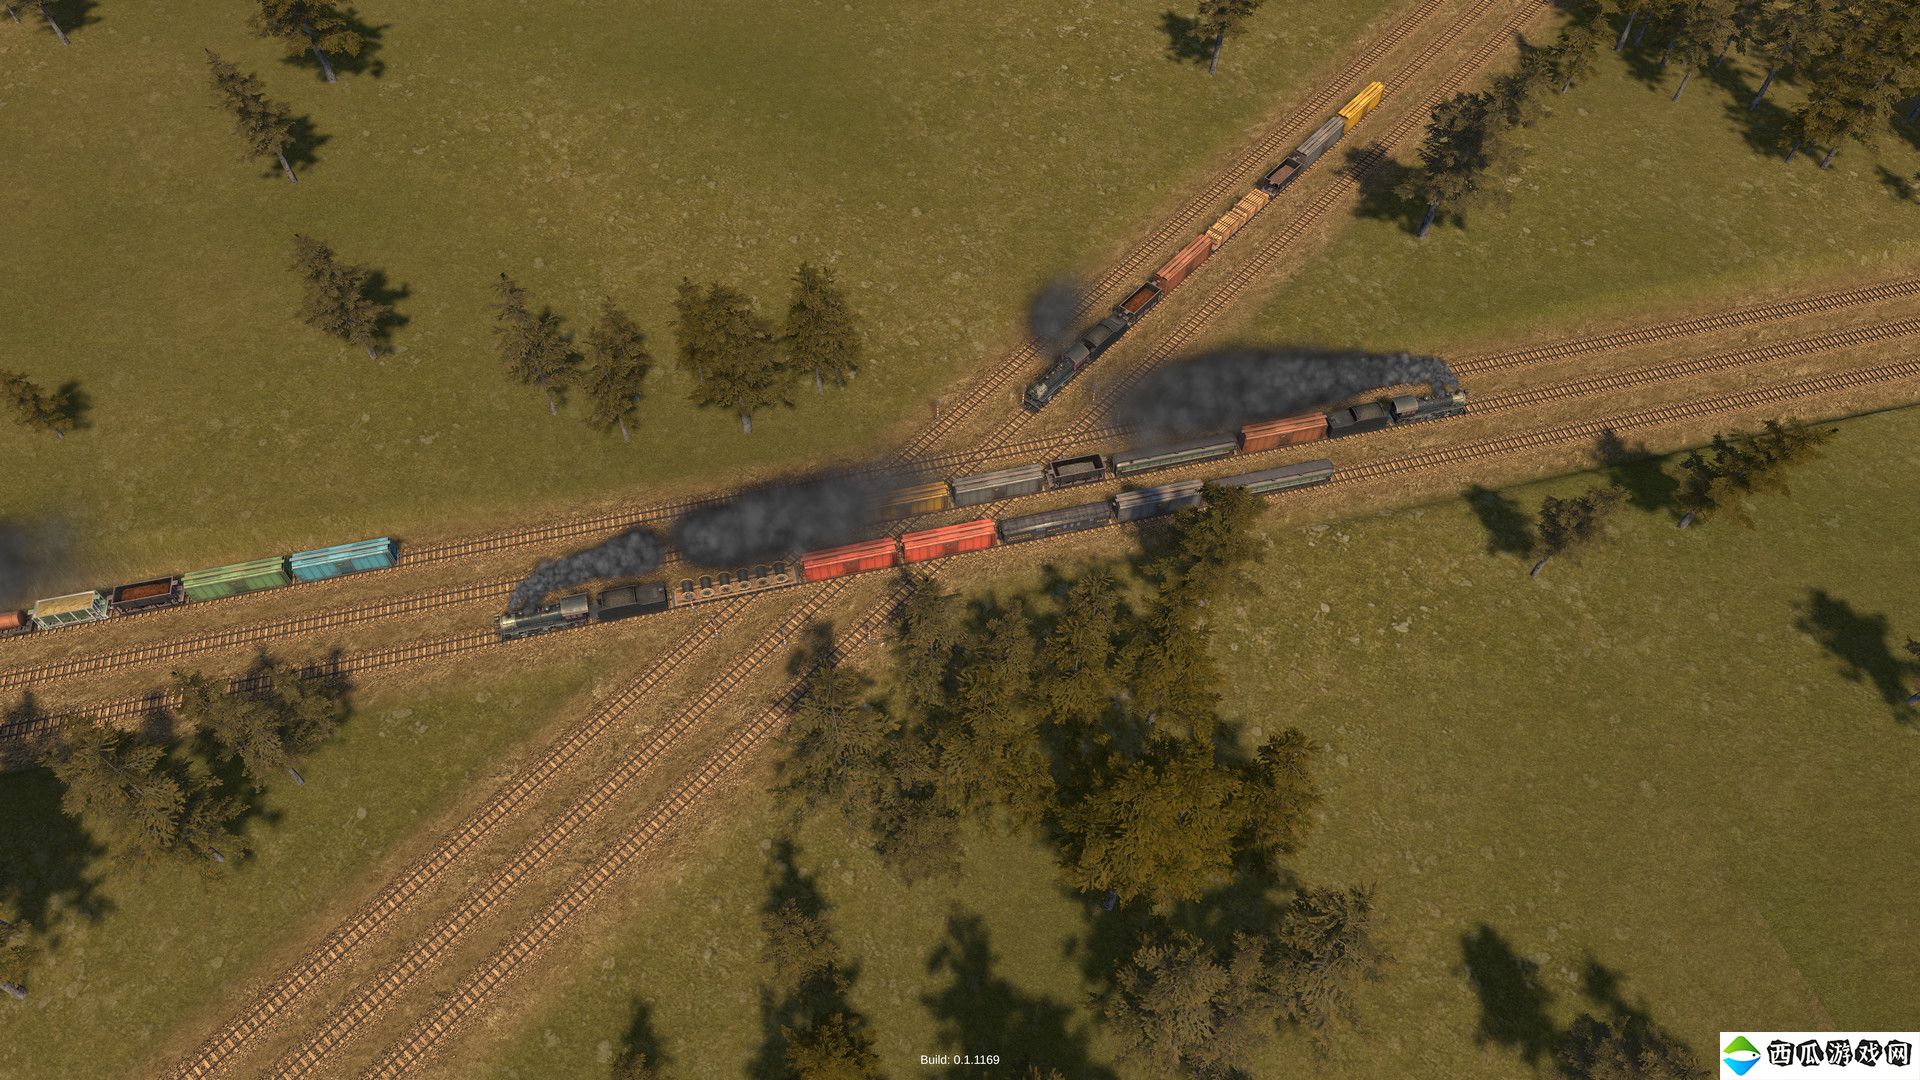 沙盒策略模拟游戏《铁道公司2》现已在Steam平台推出试玩Demo